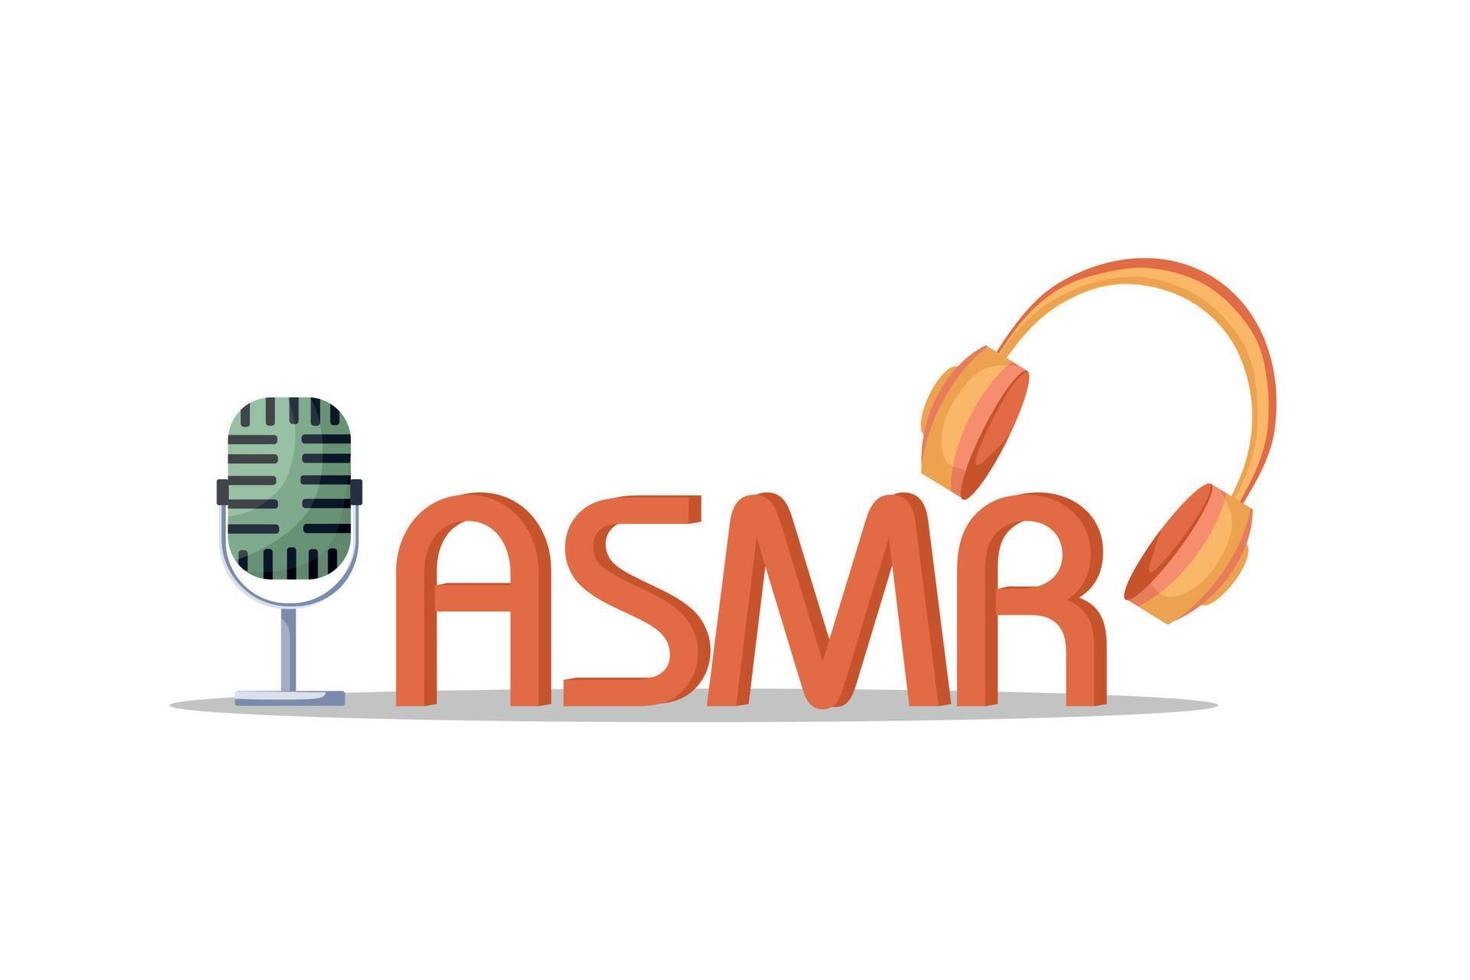 asmr-Logo für Startbildschirm. autonome sensorische meridionale Reaktion. Kopfhörer und Mikrofon als Sinnbild für Klanggenuss vektor